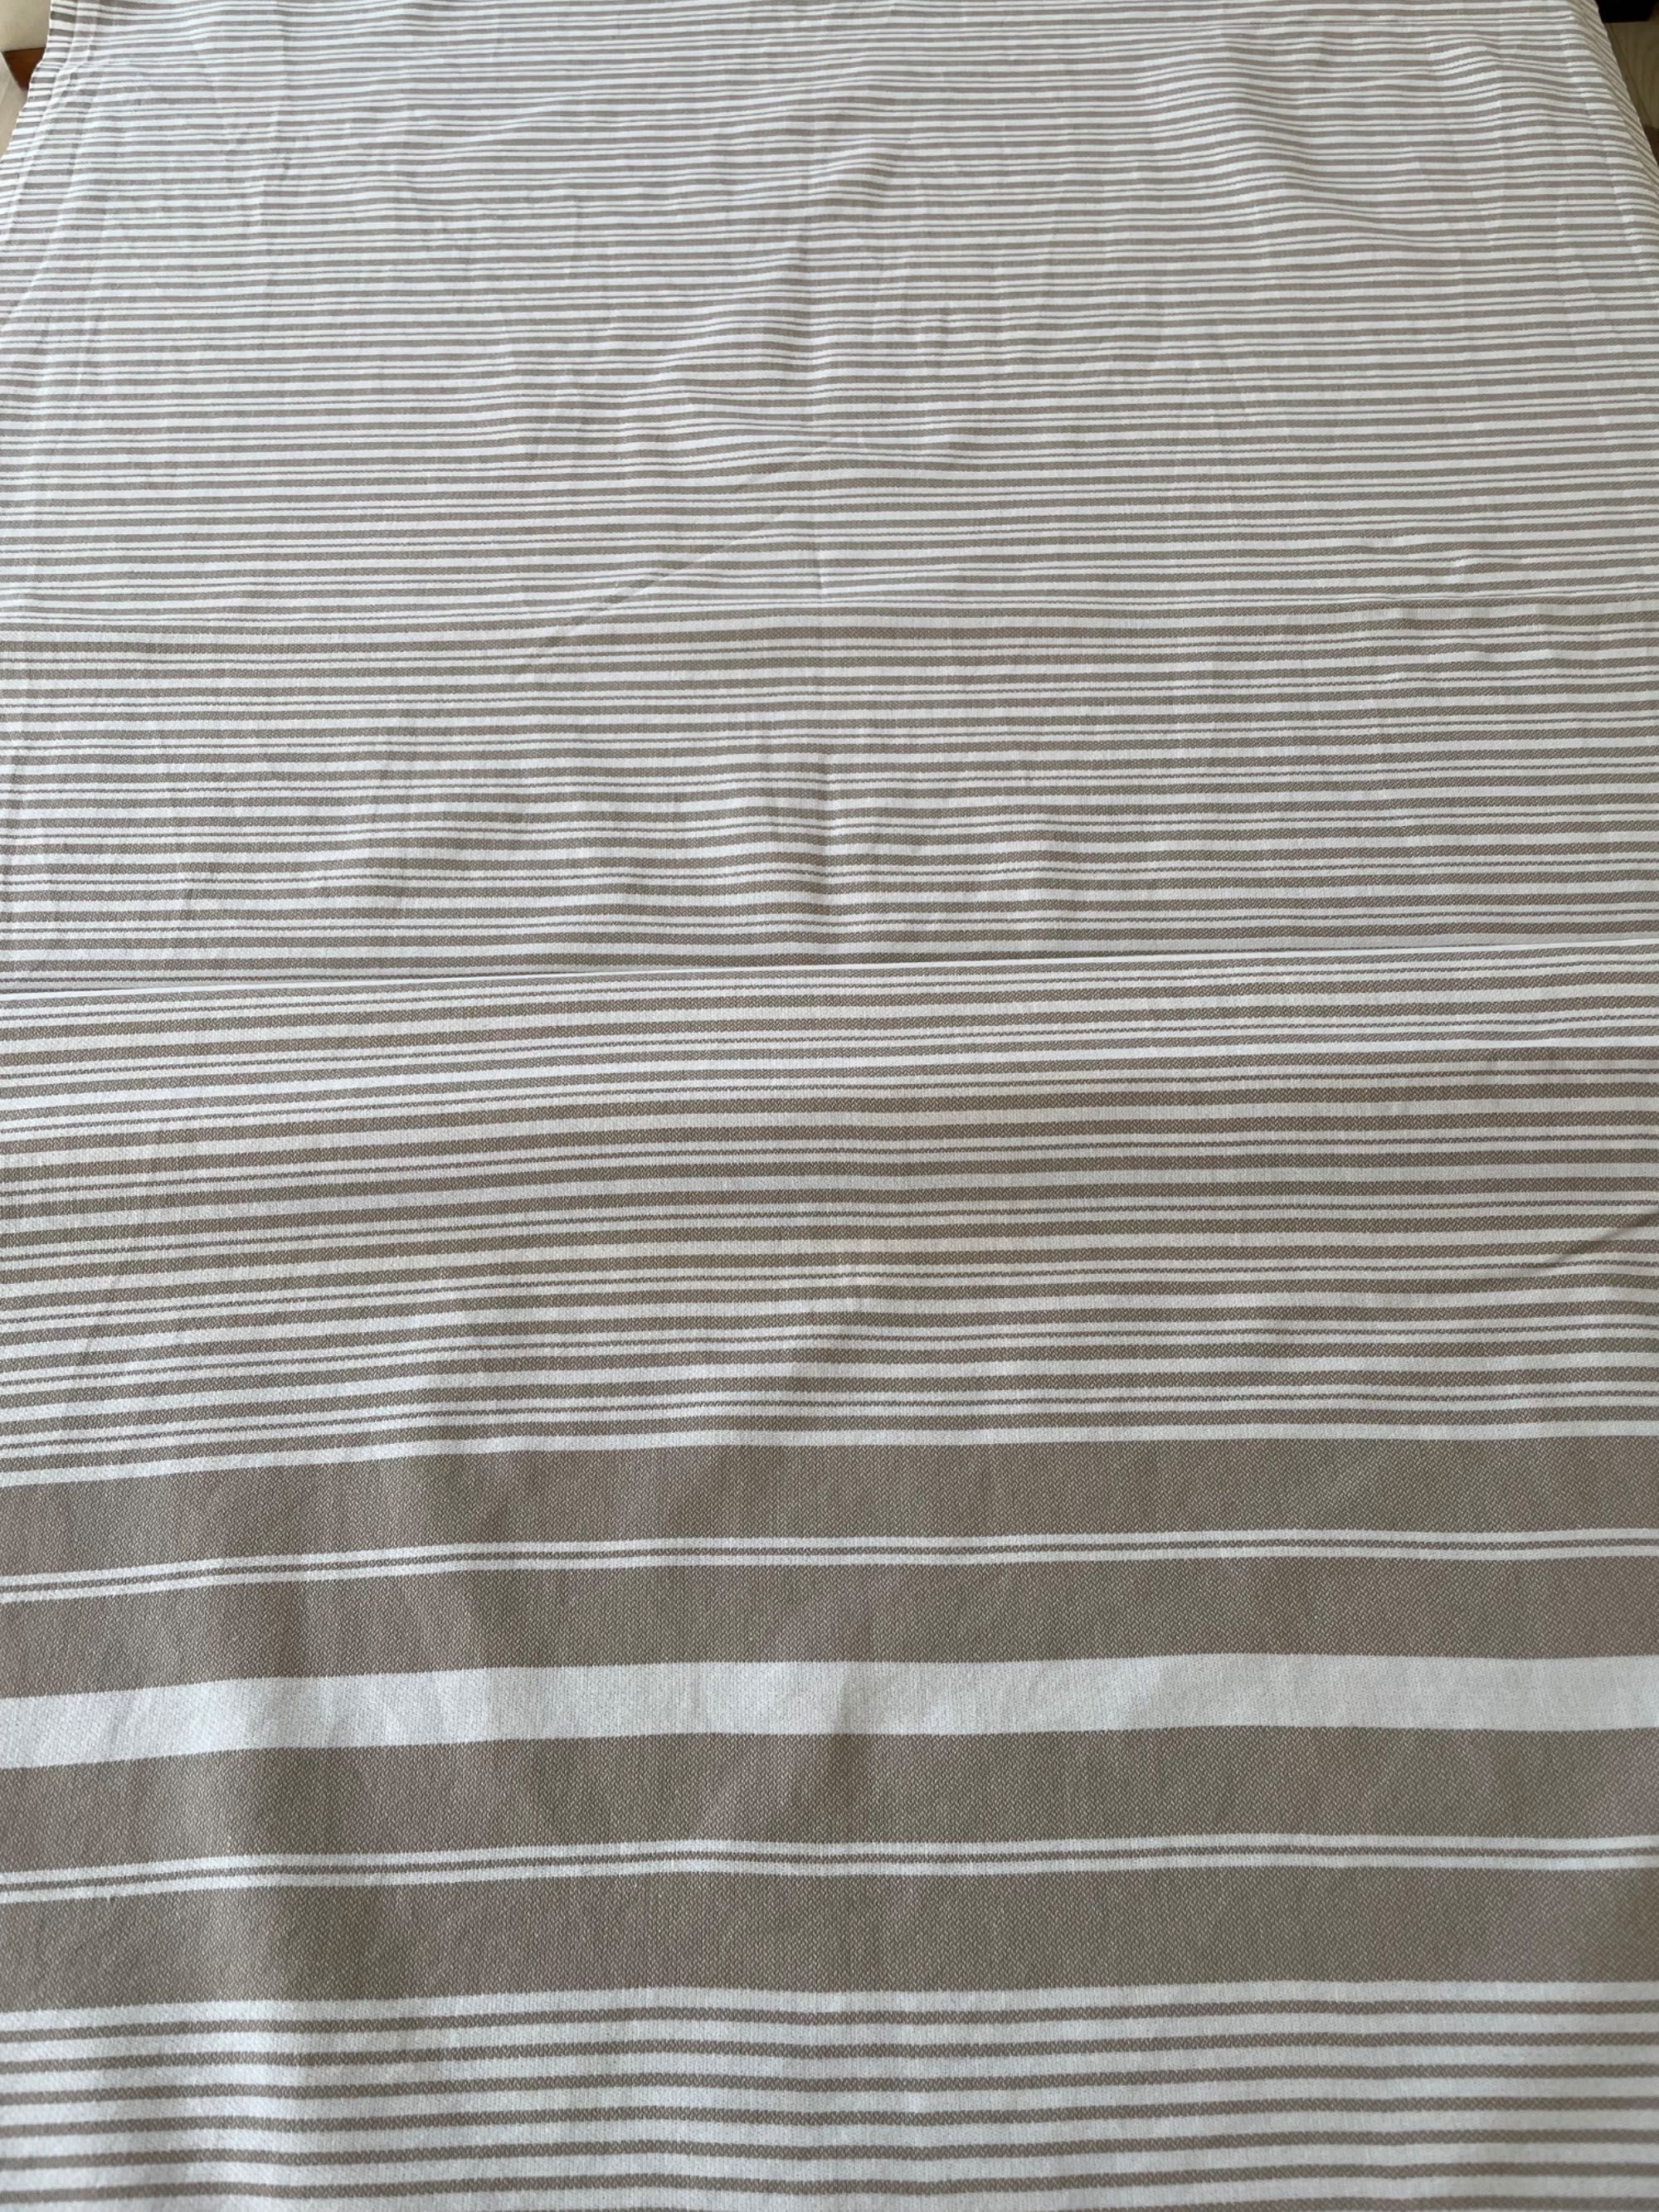 H&M Home Fouta Ręcznik plażowy Obrus bawełna 80x165cm beżowy